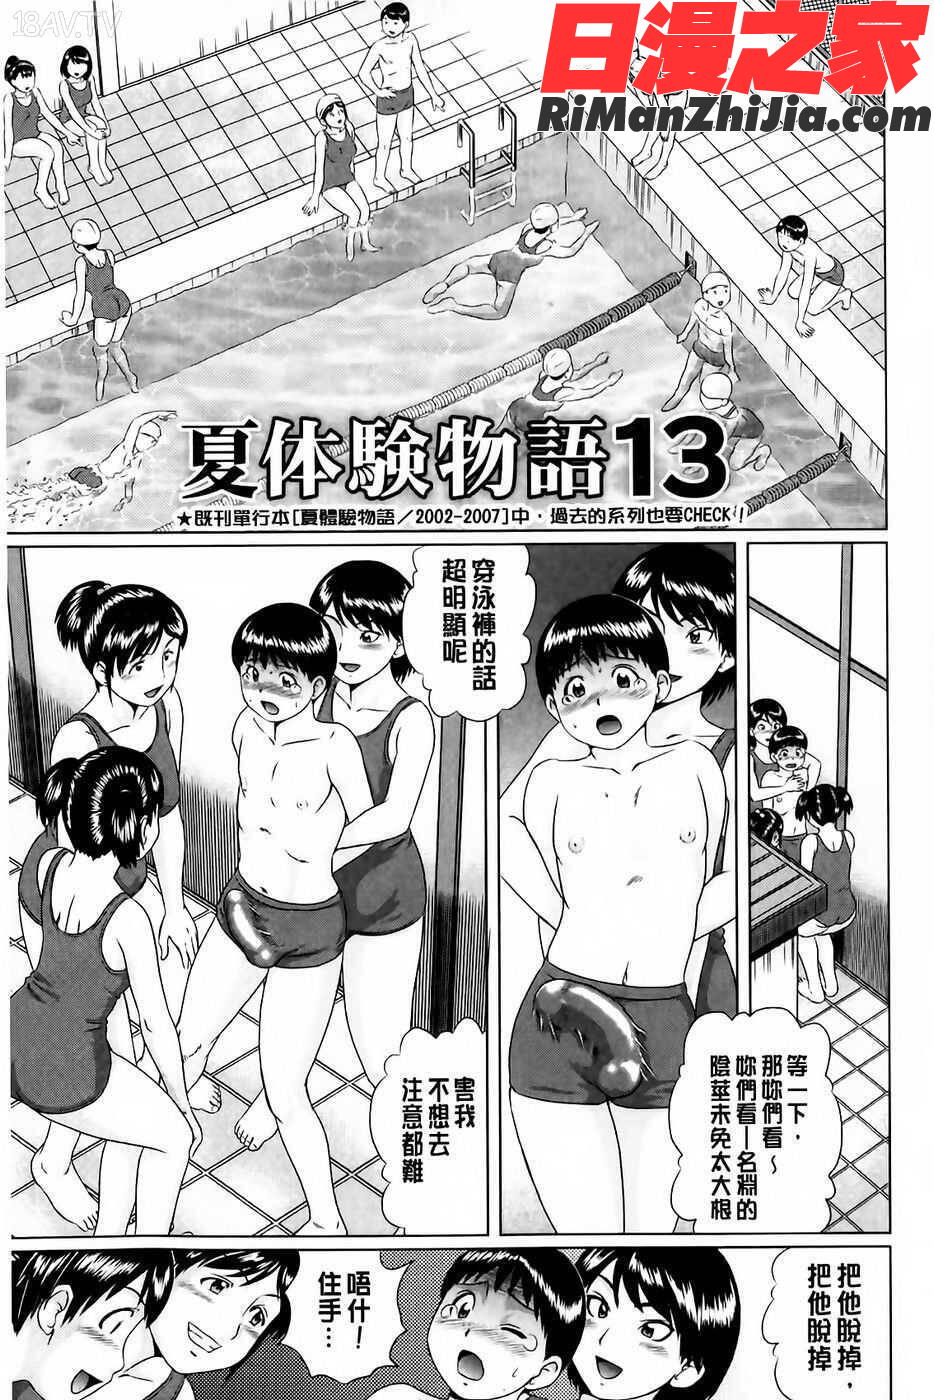 童貞卒業漫画 免费阅读 整部漫画 84.jpg